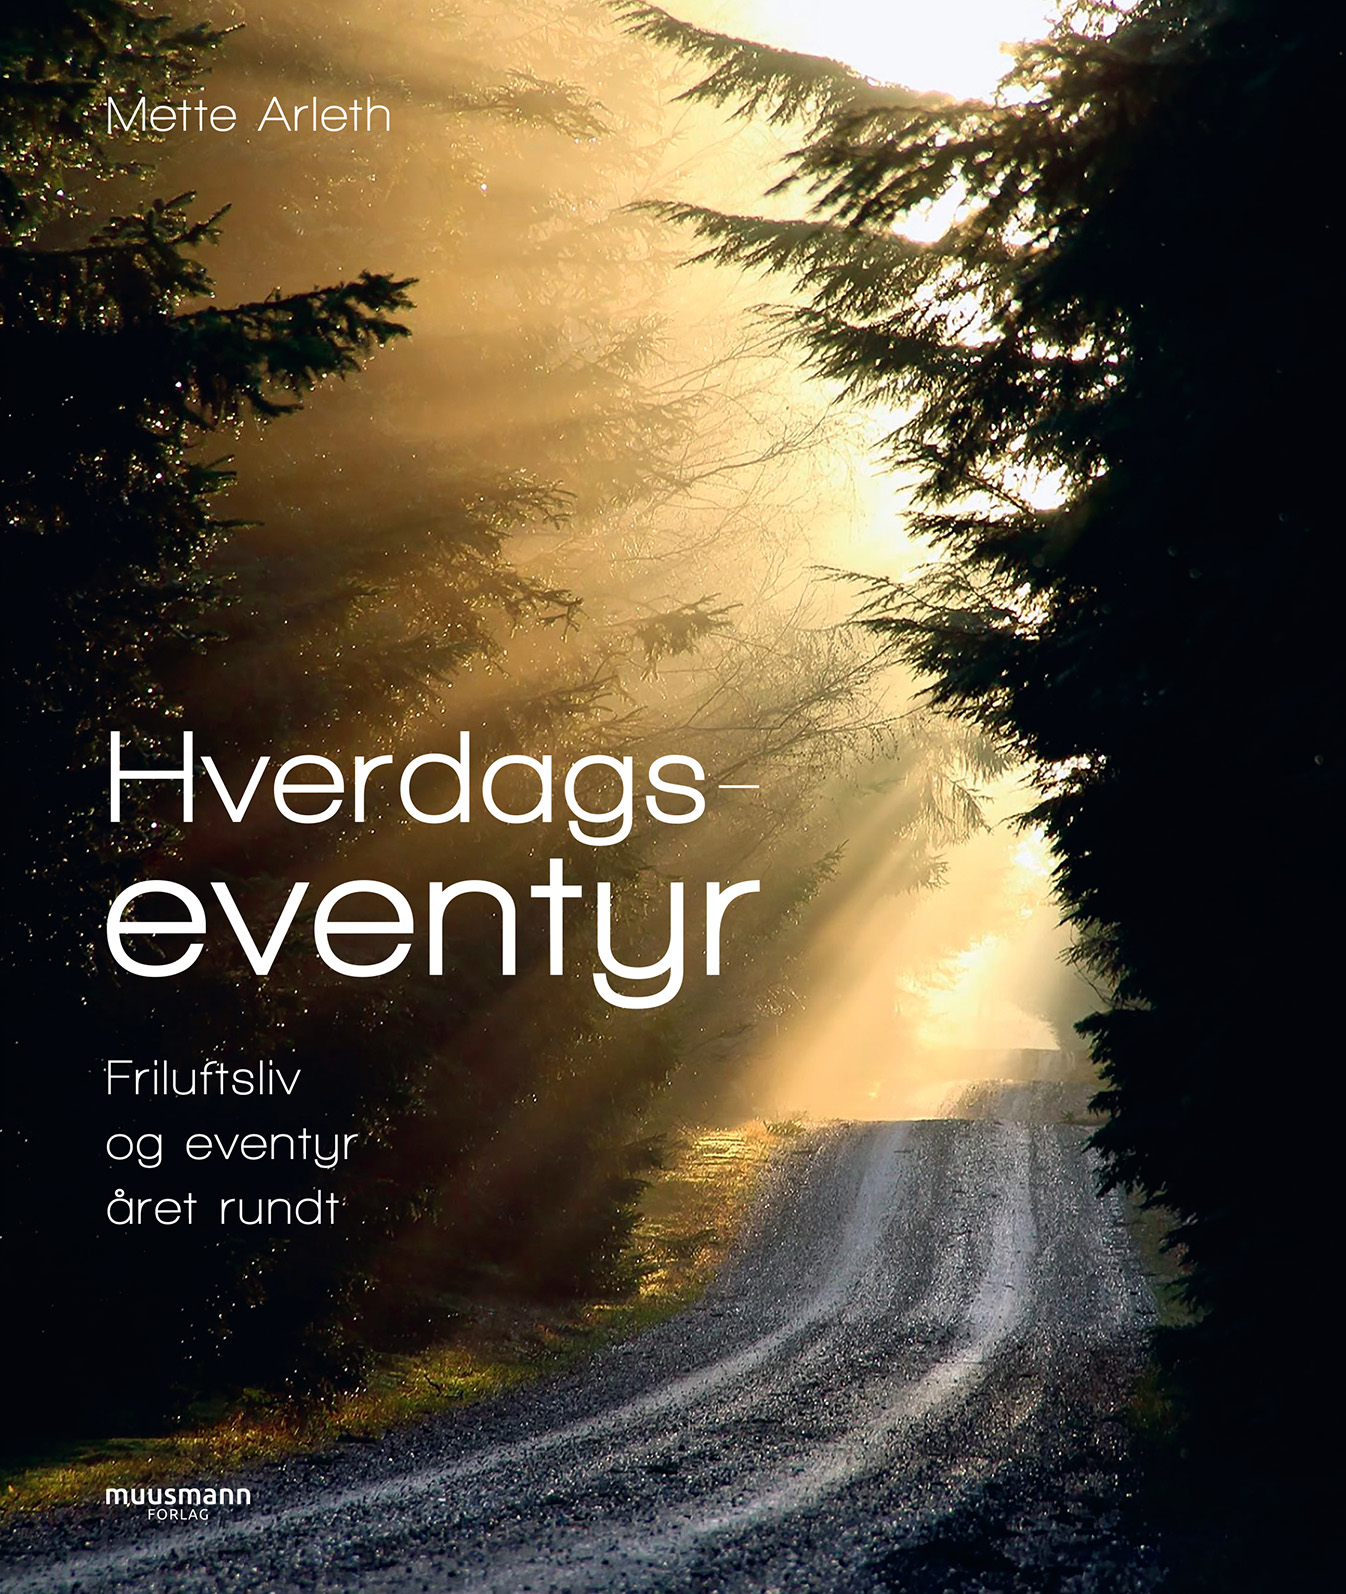 Hverdagseventyr, Friluftsliv og eventyr året rundt af Mette Arleth, bøger til efteråret, Muusmann Forlag